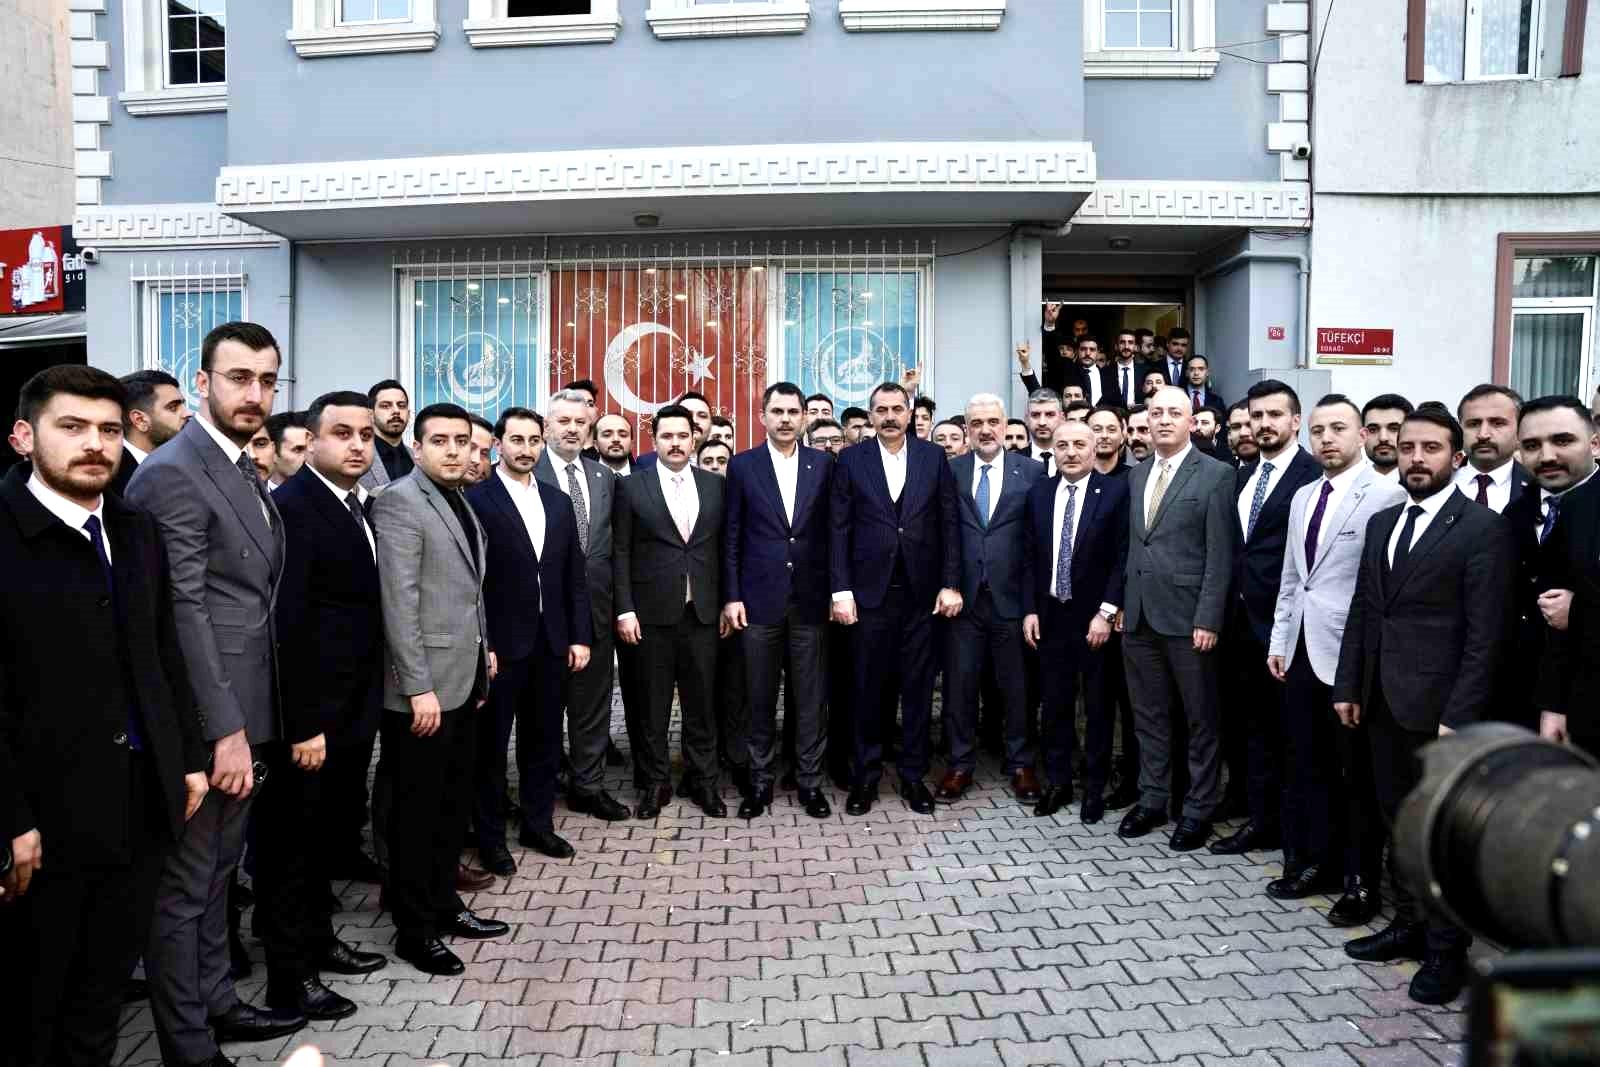 İBB Başkan Adayı Murat Kurum: “İstanbul’un yeniden yükseliş dönemini hep birlikte başaracağız”